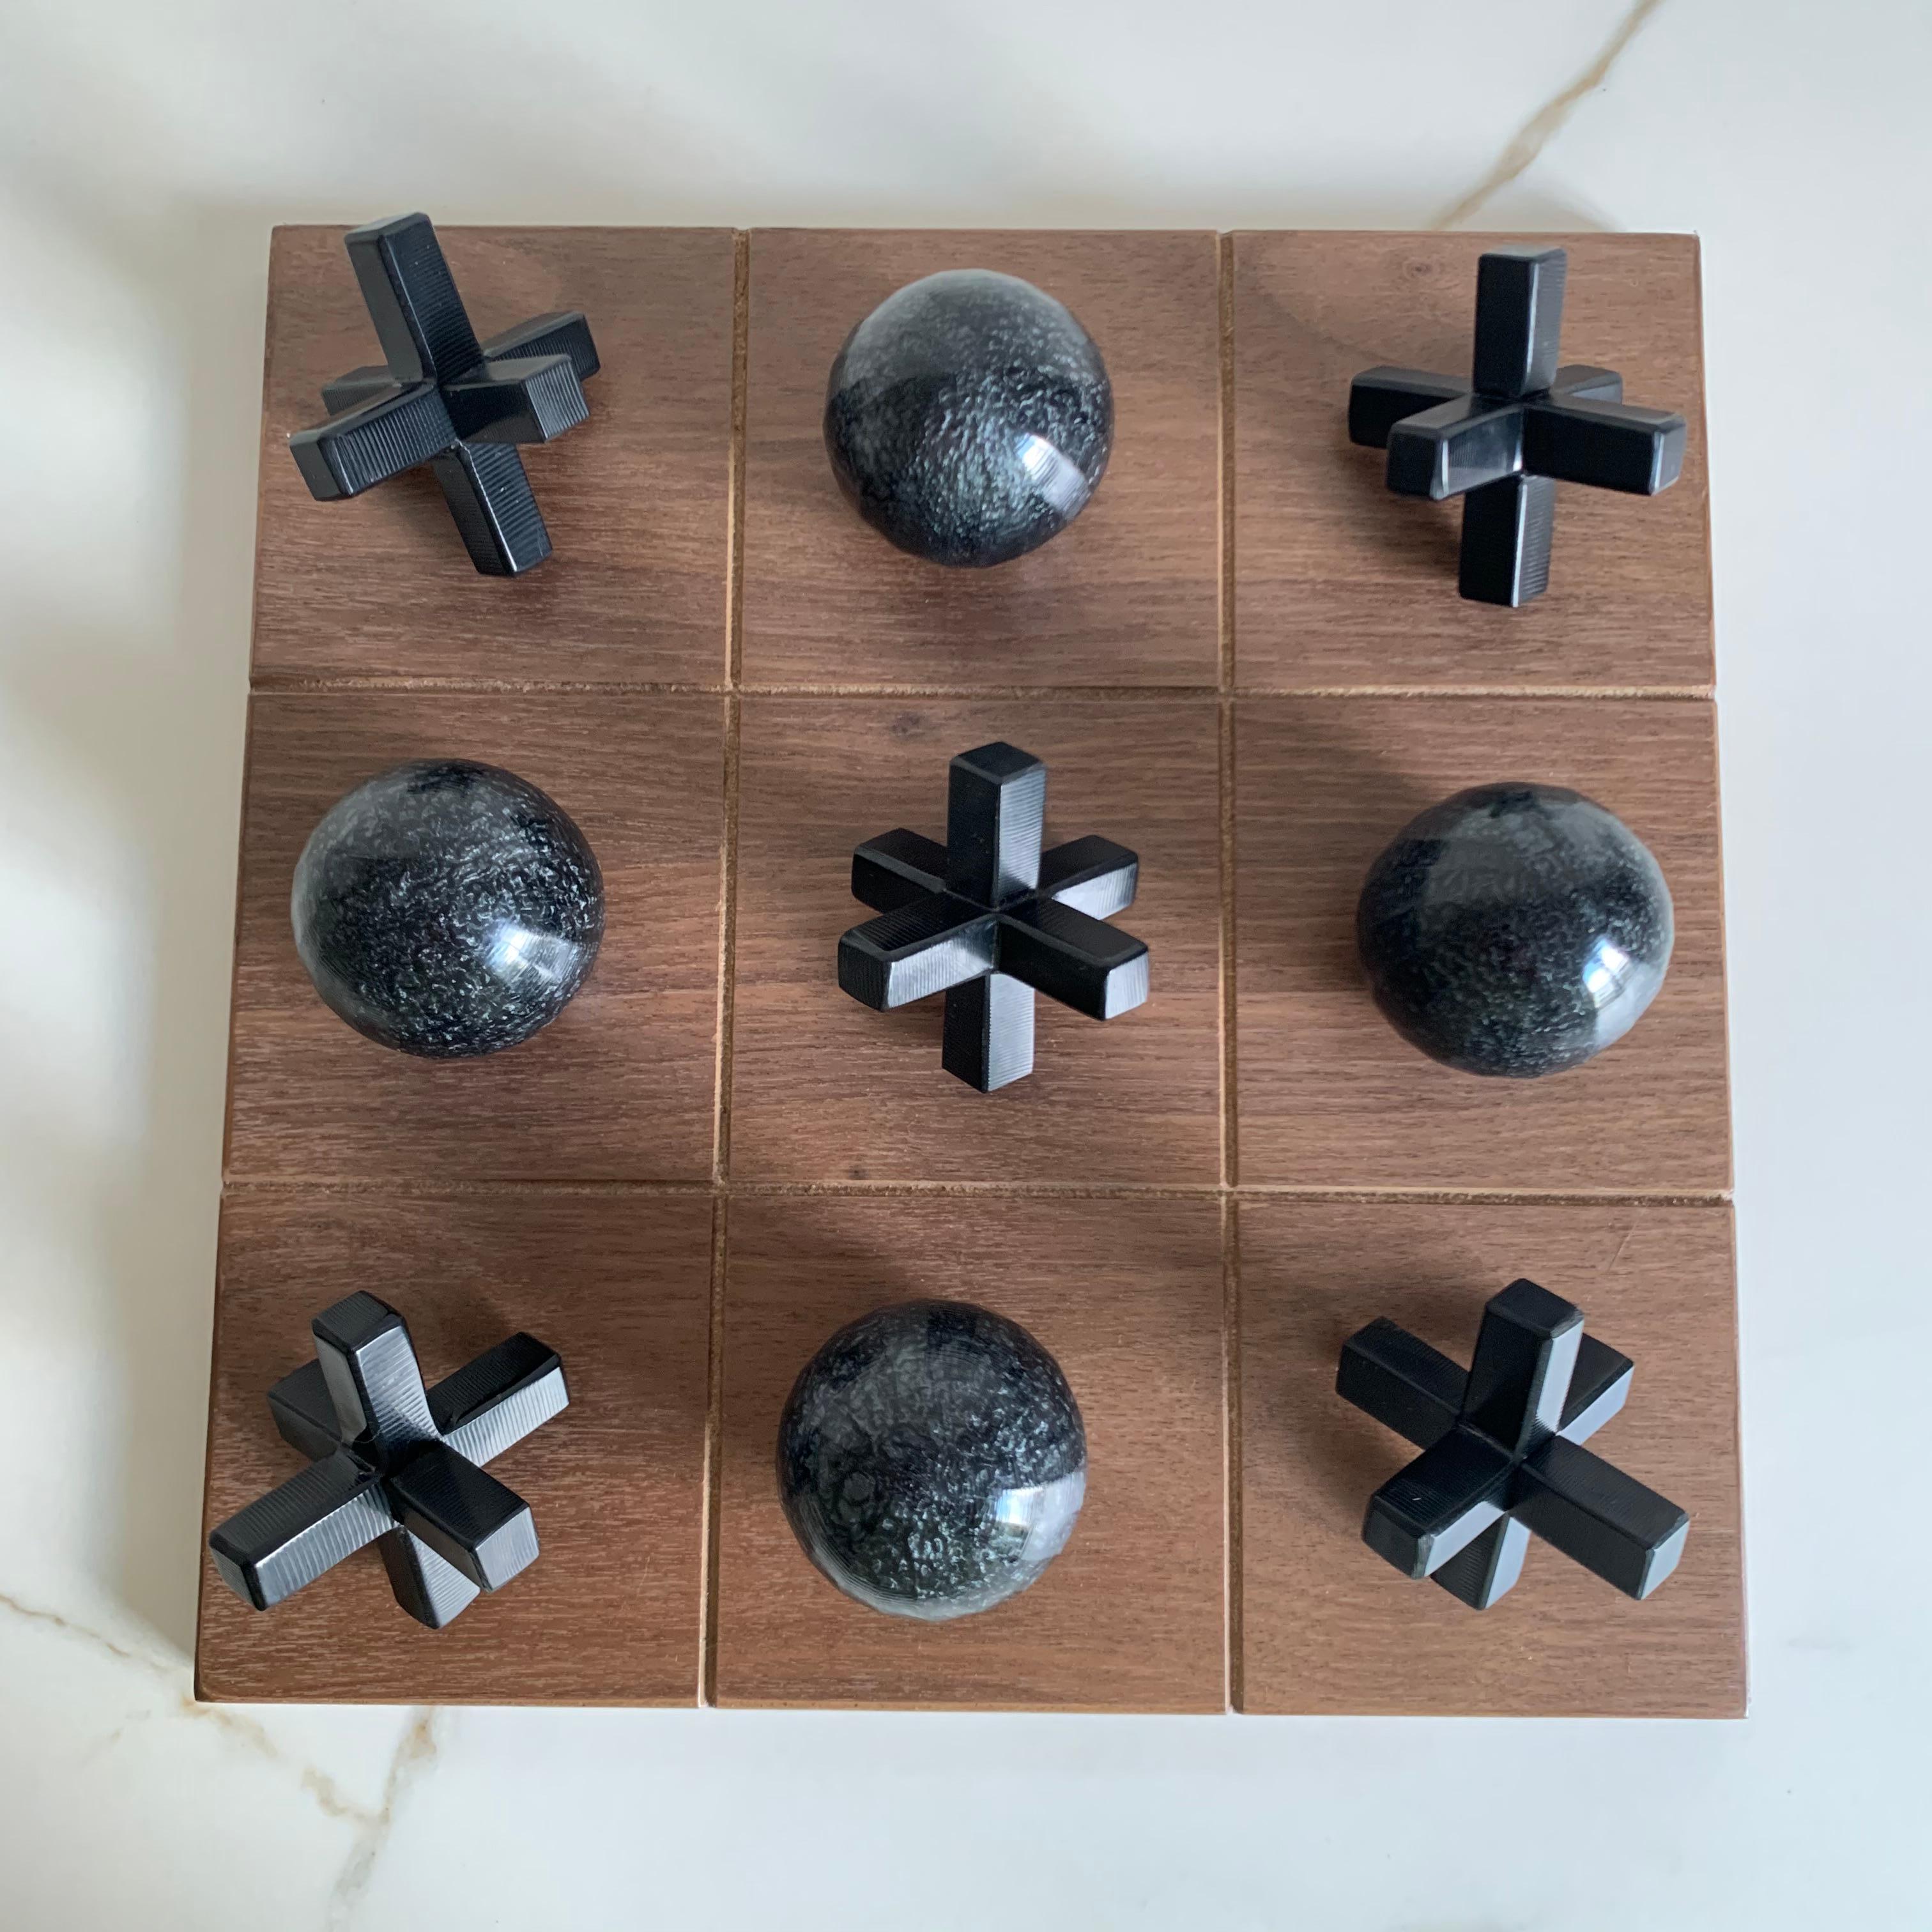 Unser Tic Tac Toe ist eine schöne, moderne und lustige Version des klassischen Spiels. Die dreidimensionalen Stücke sind aus schwarzem Perlmutt und schwarzem Harz handgefertigt und das Brett ist aus Eichenholzfurnier gefertigt. Es wird das coolste